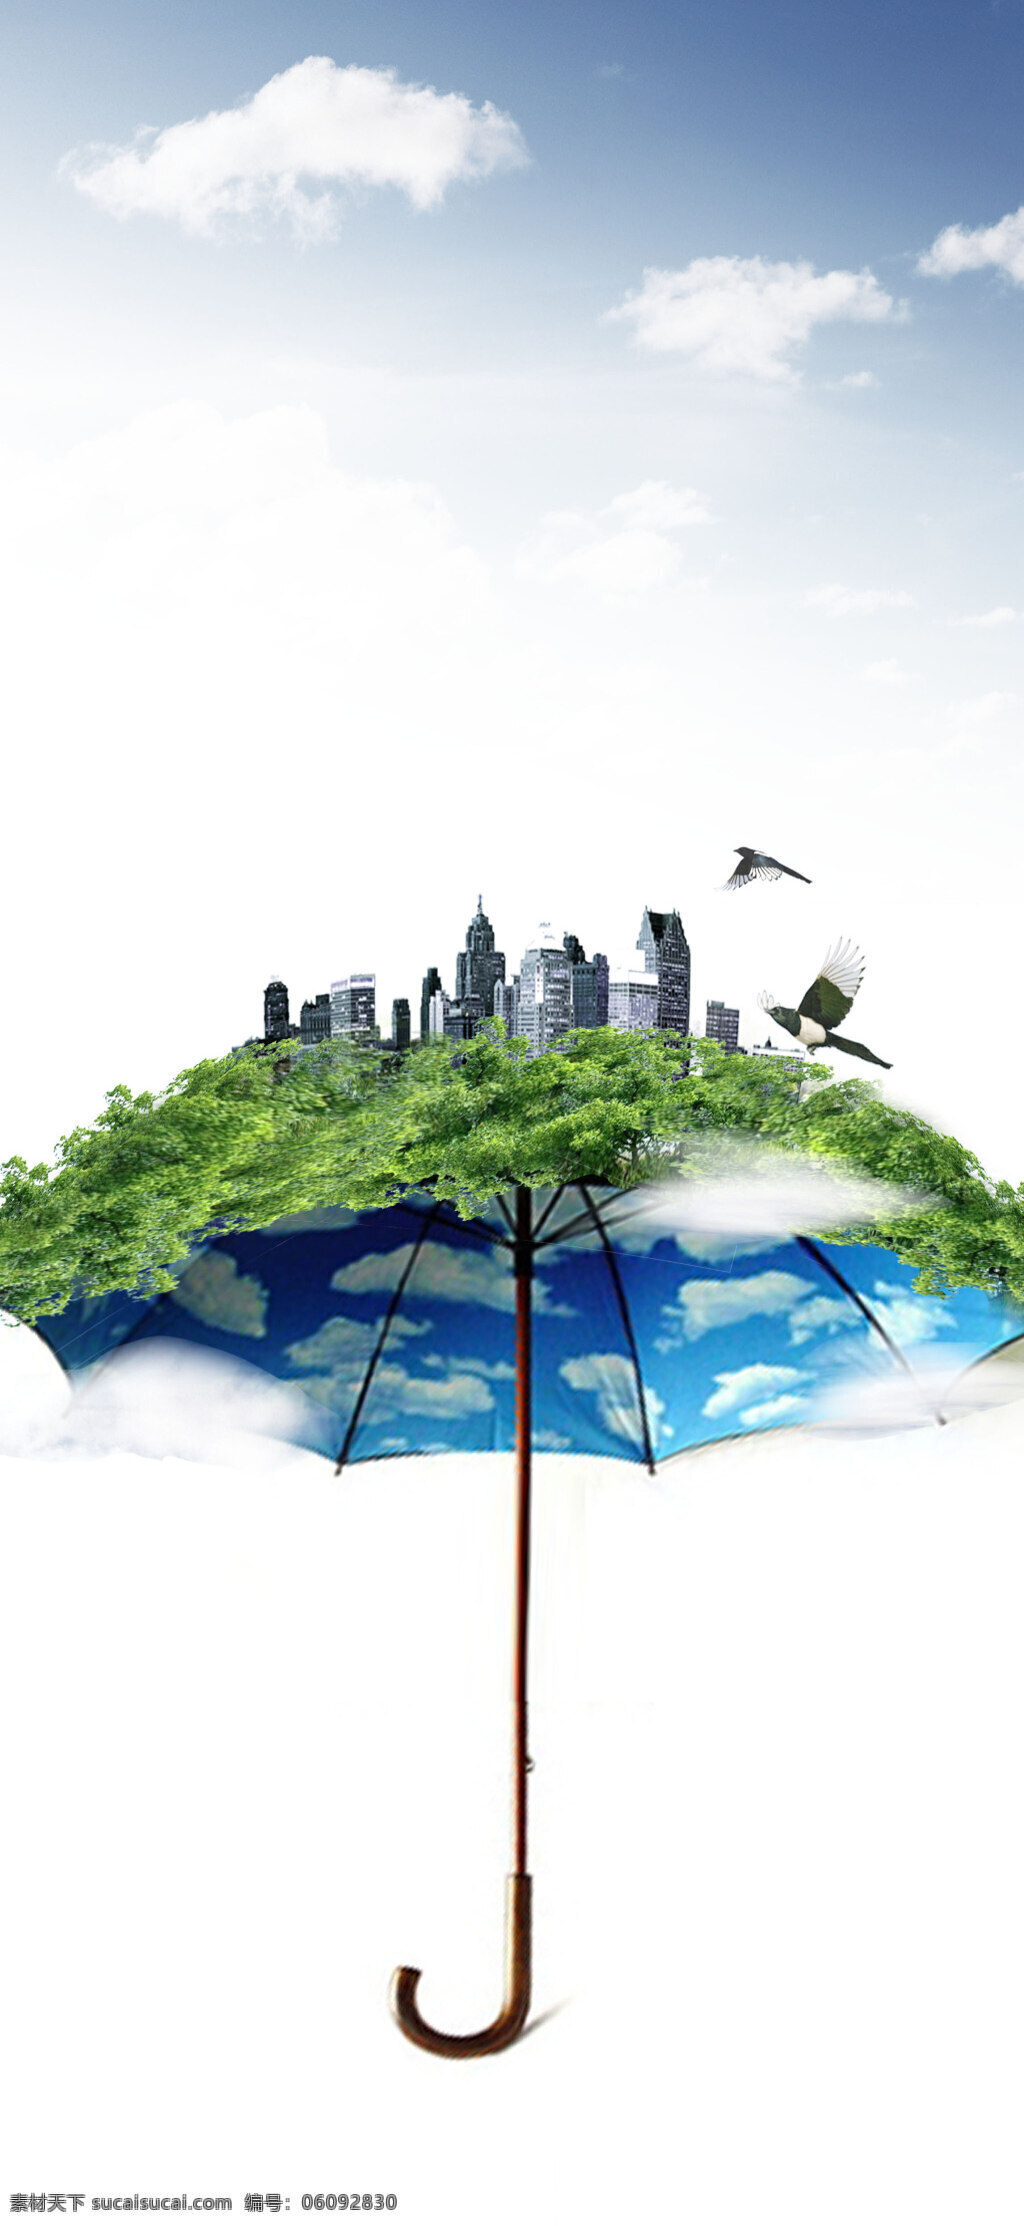 环保概念海报 绿色环保 环境保护 绿色能源 生态保护 生态平衡 psd素材 概念海报